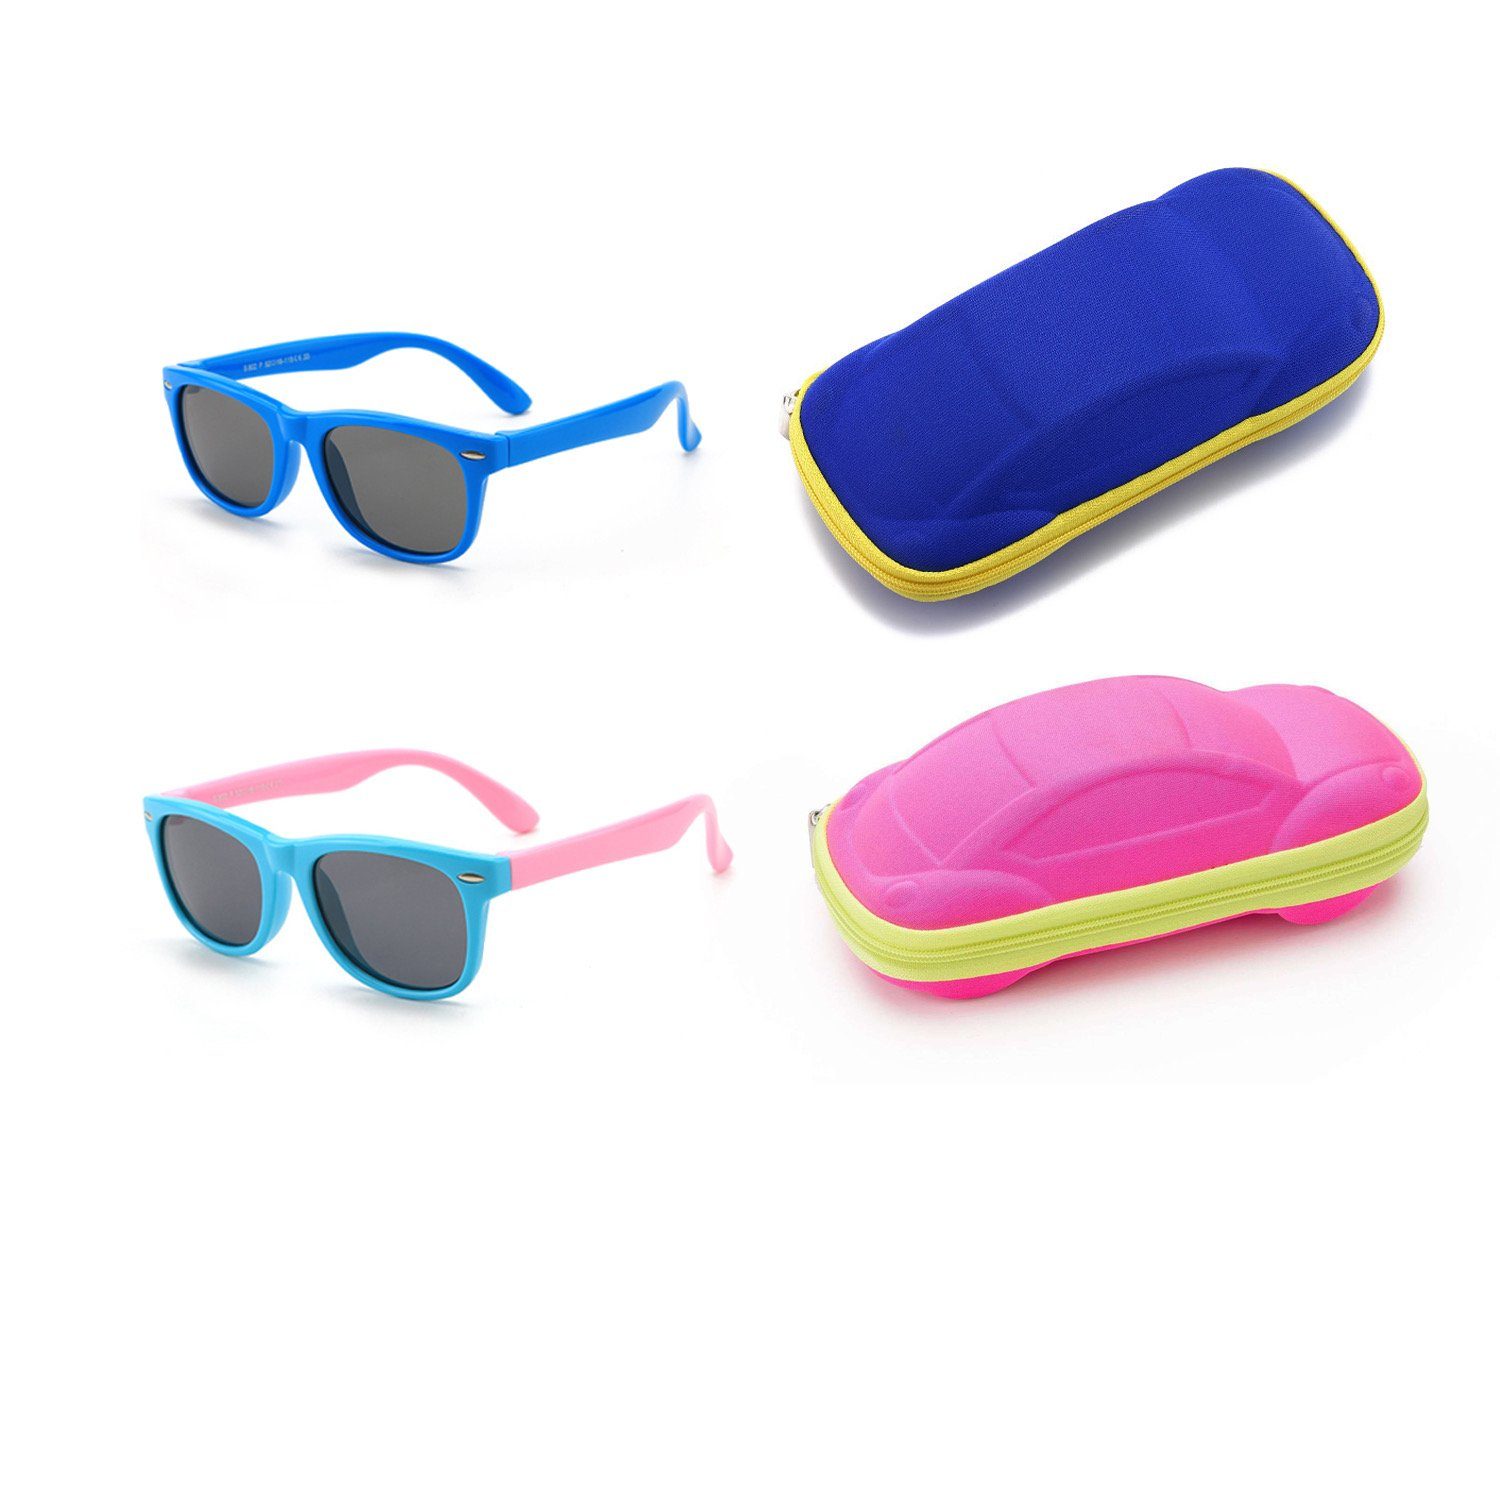 Olotos Sonnenbrille Sonnenbrille für Kinder Mädchen Jungen Gummi 100% UV400 Schutz Brille Blau+Hellblau mit Brillenetui